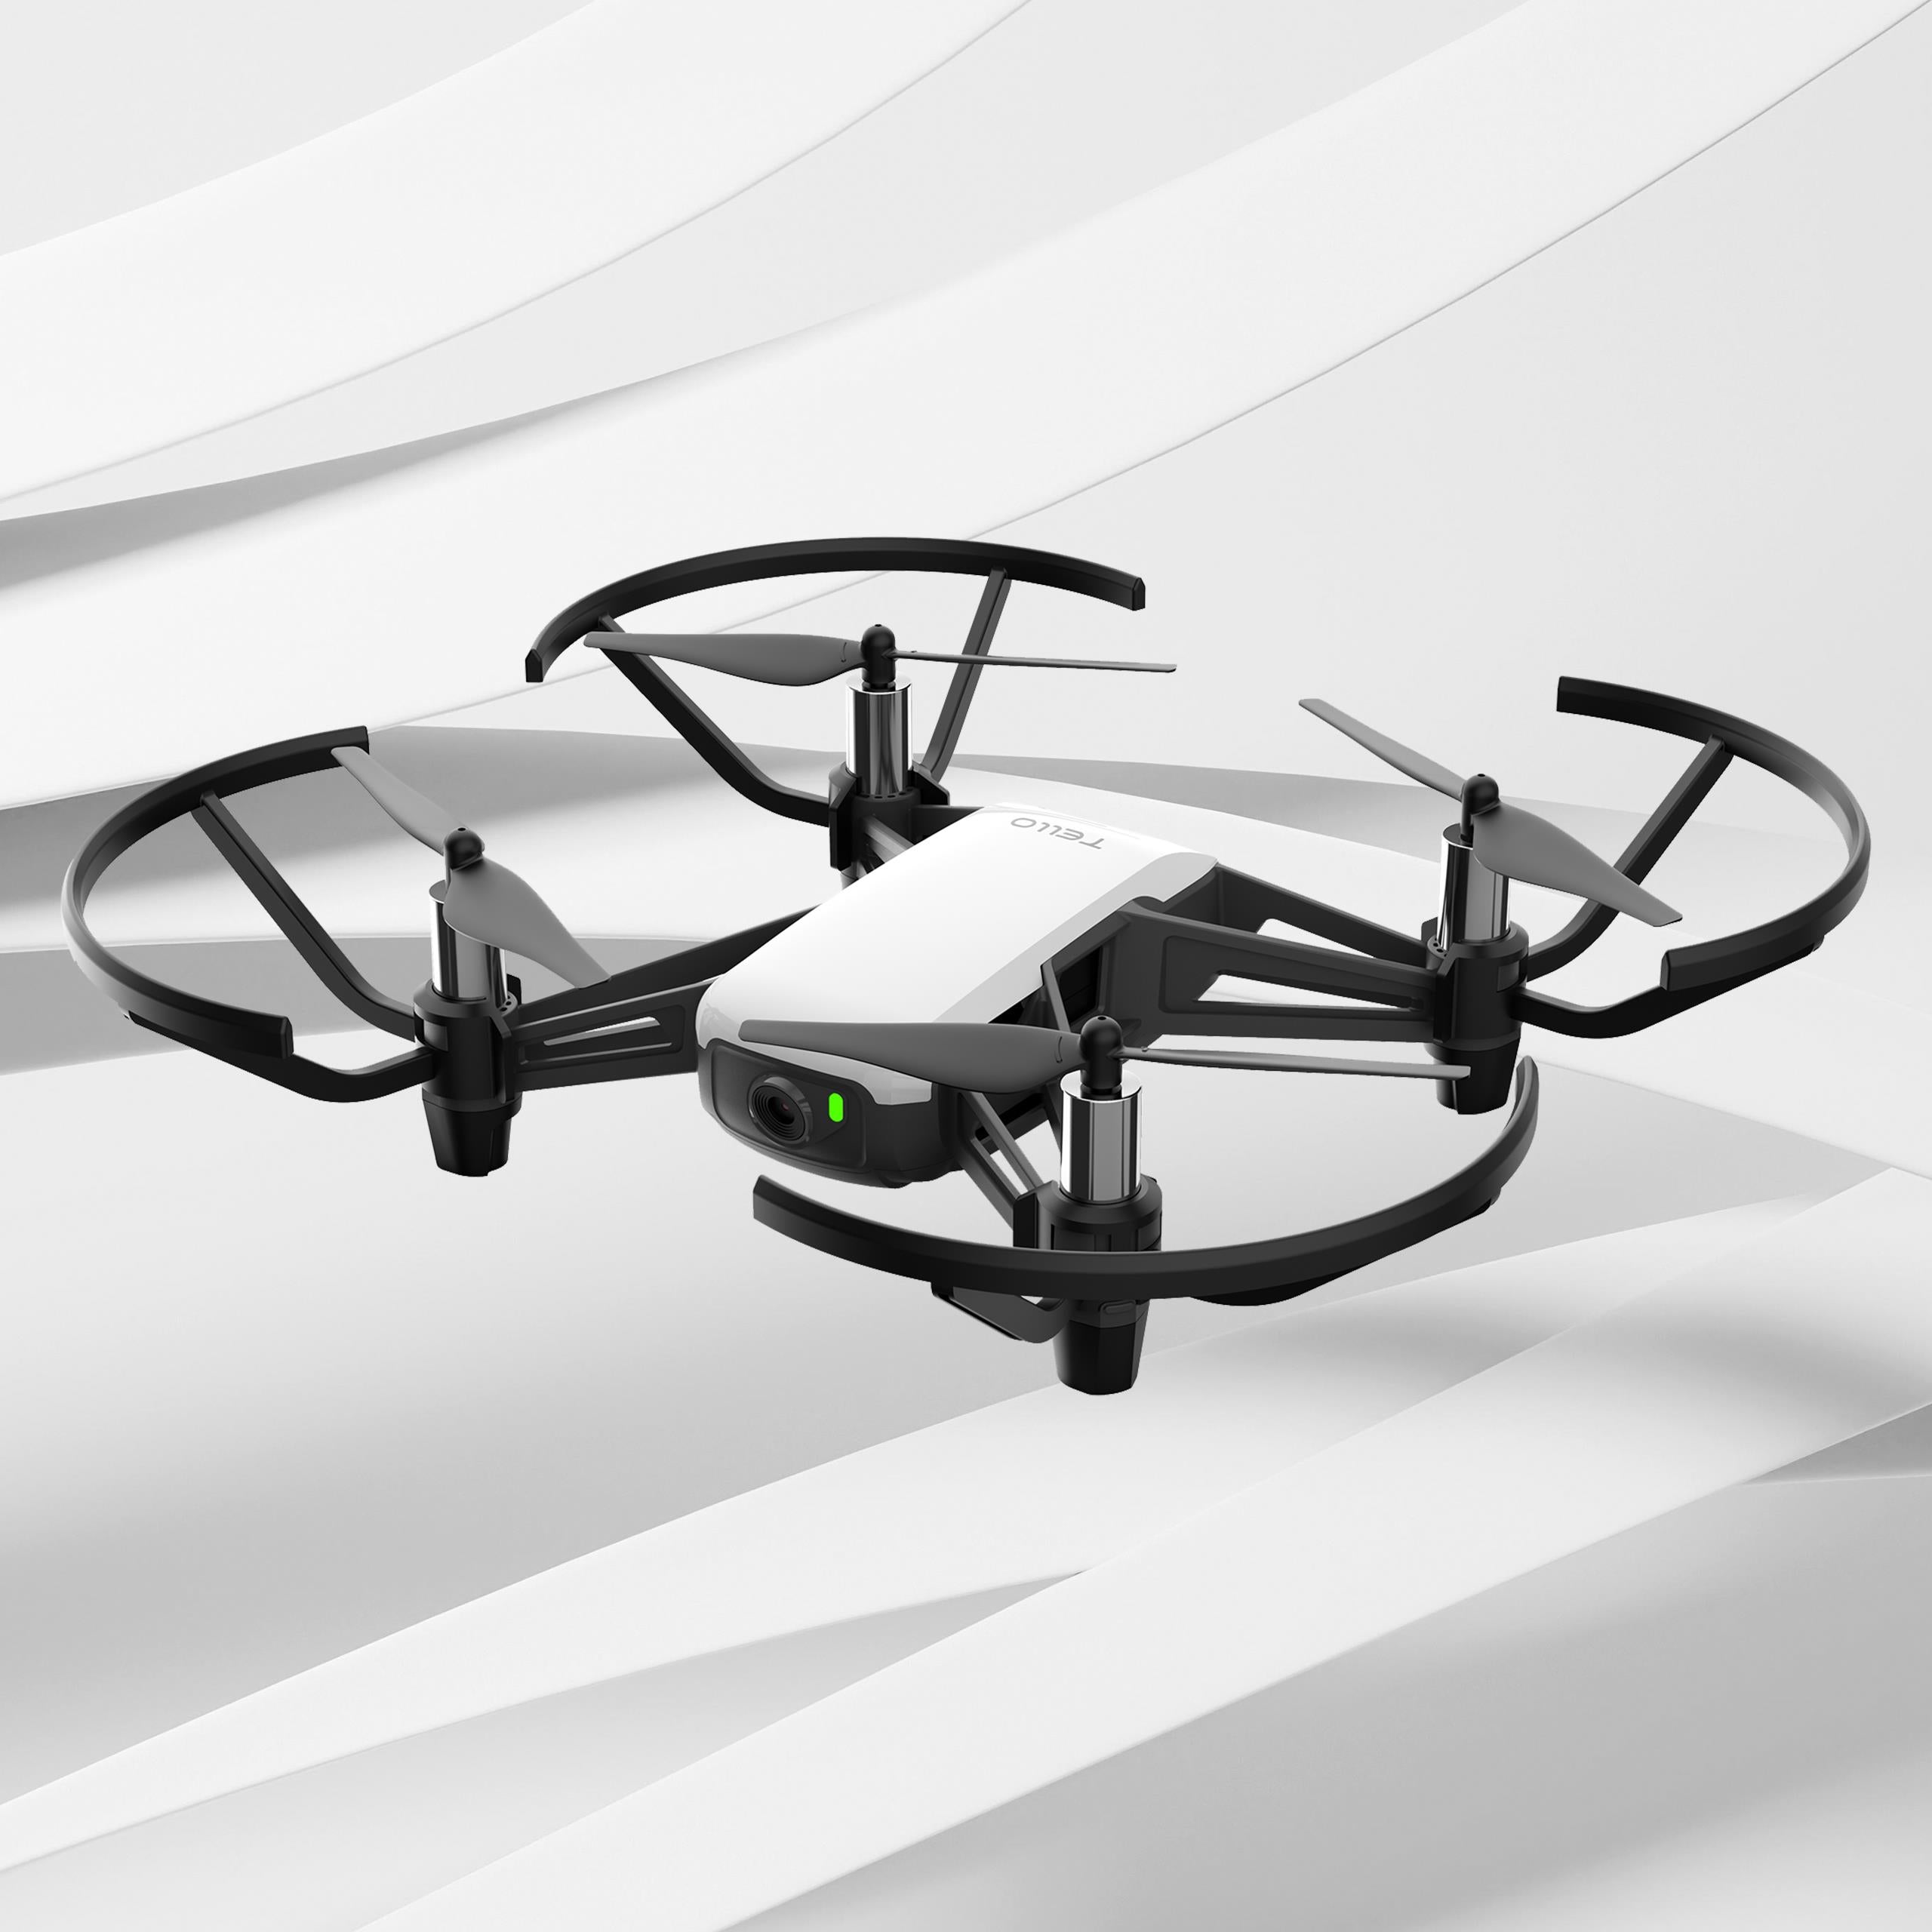 Drone Tello Boost Combo DJI - DJI020